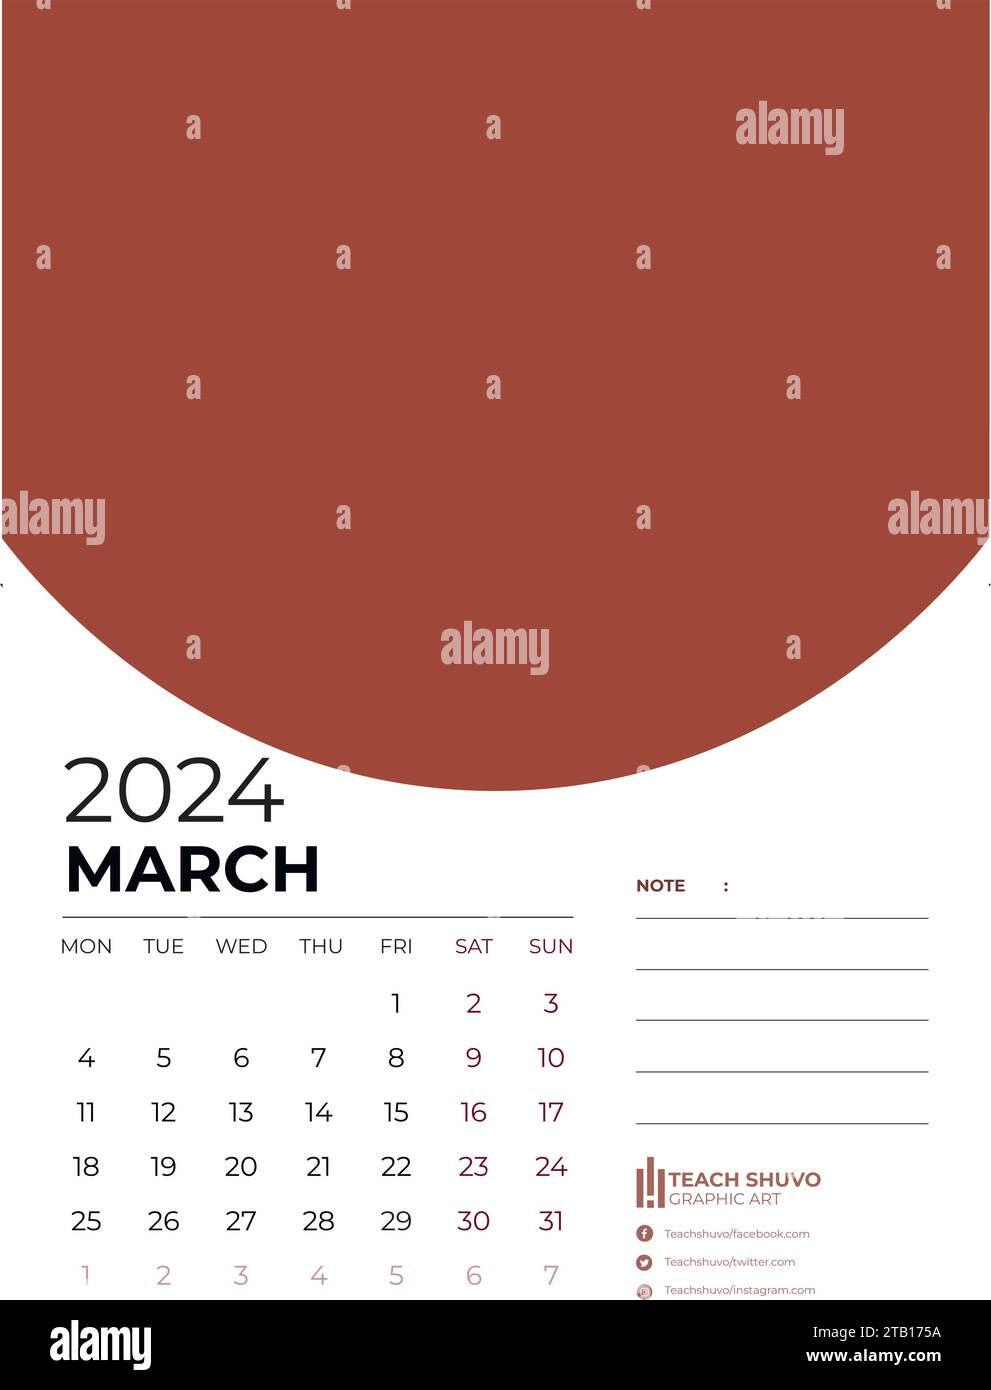 Calendar 2024 Banque d'images vectorielles - Page 2 - Alamy